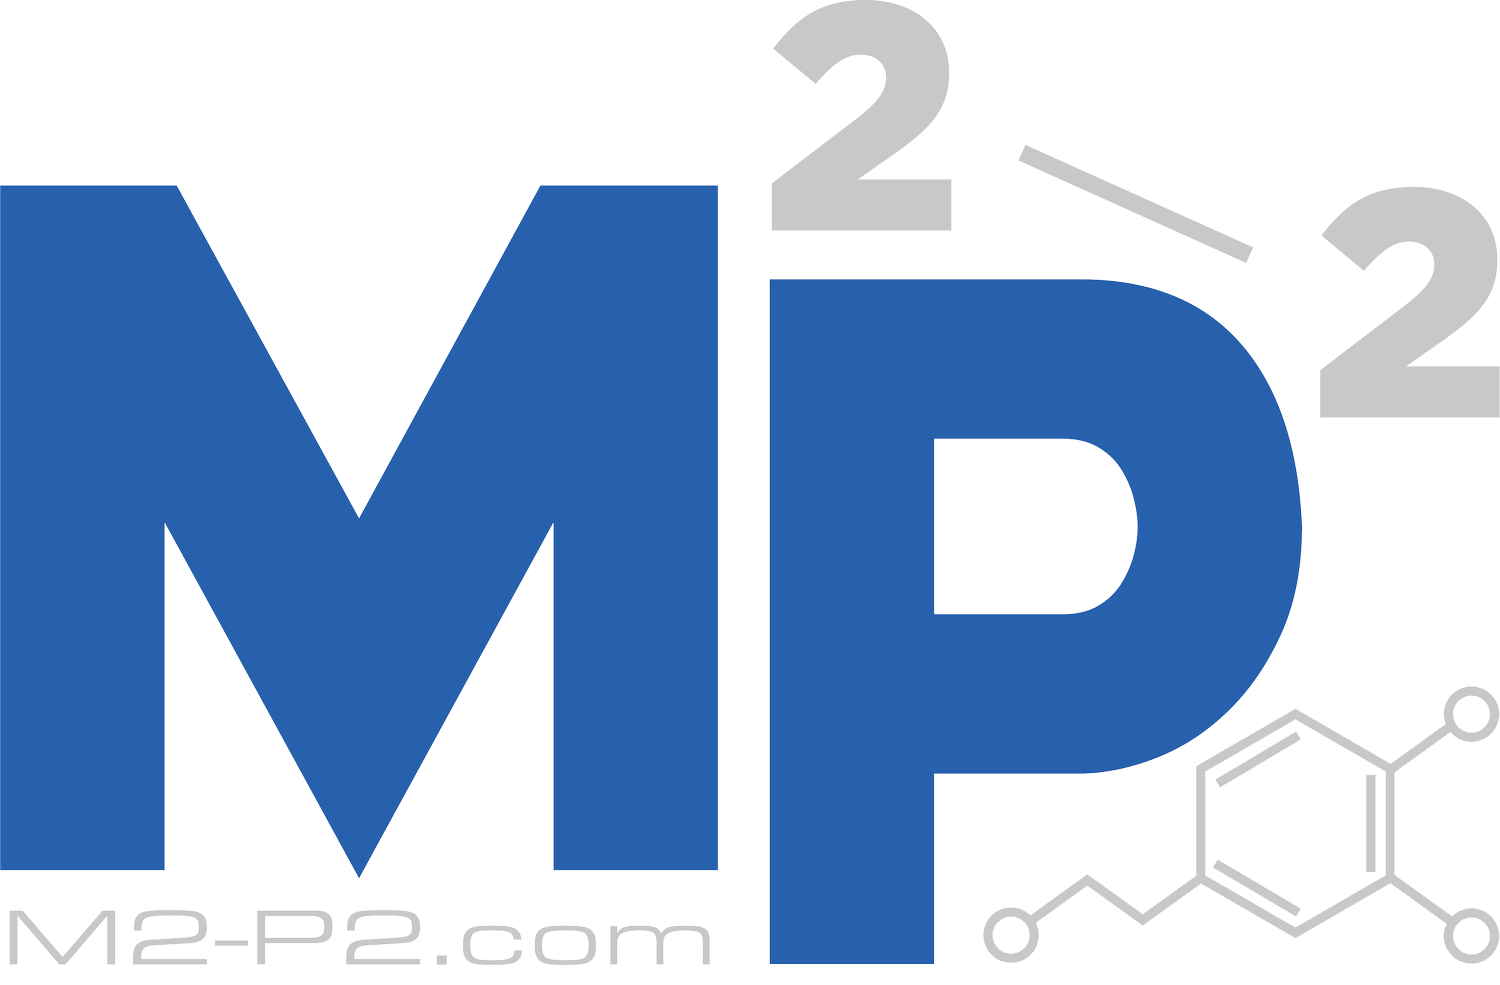 M2-P2.com